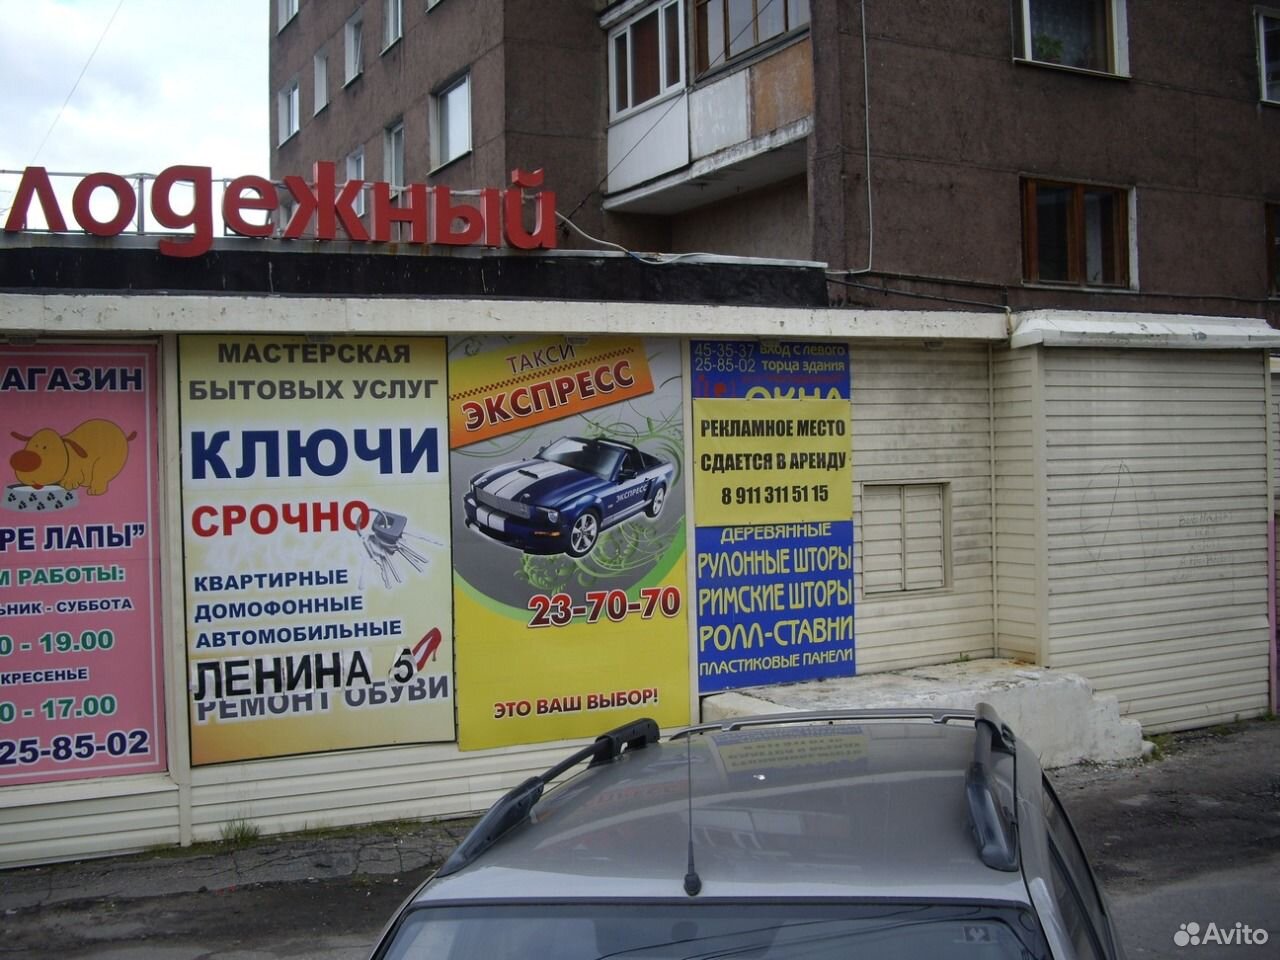 Мурманск реклама